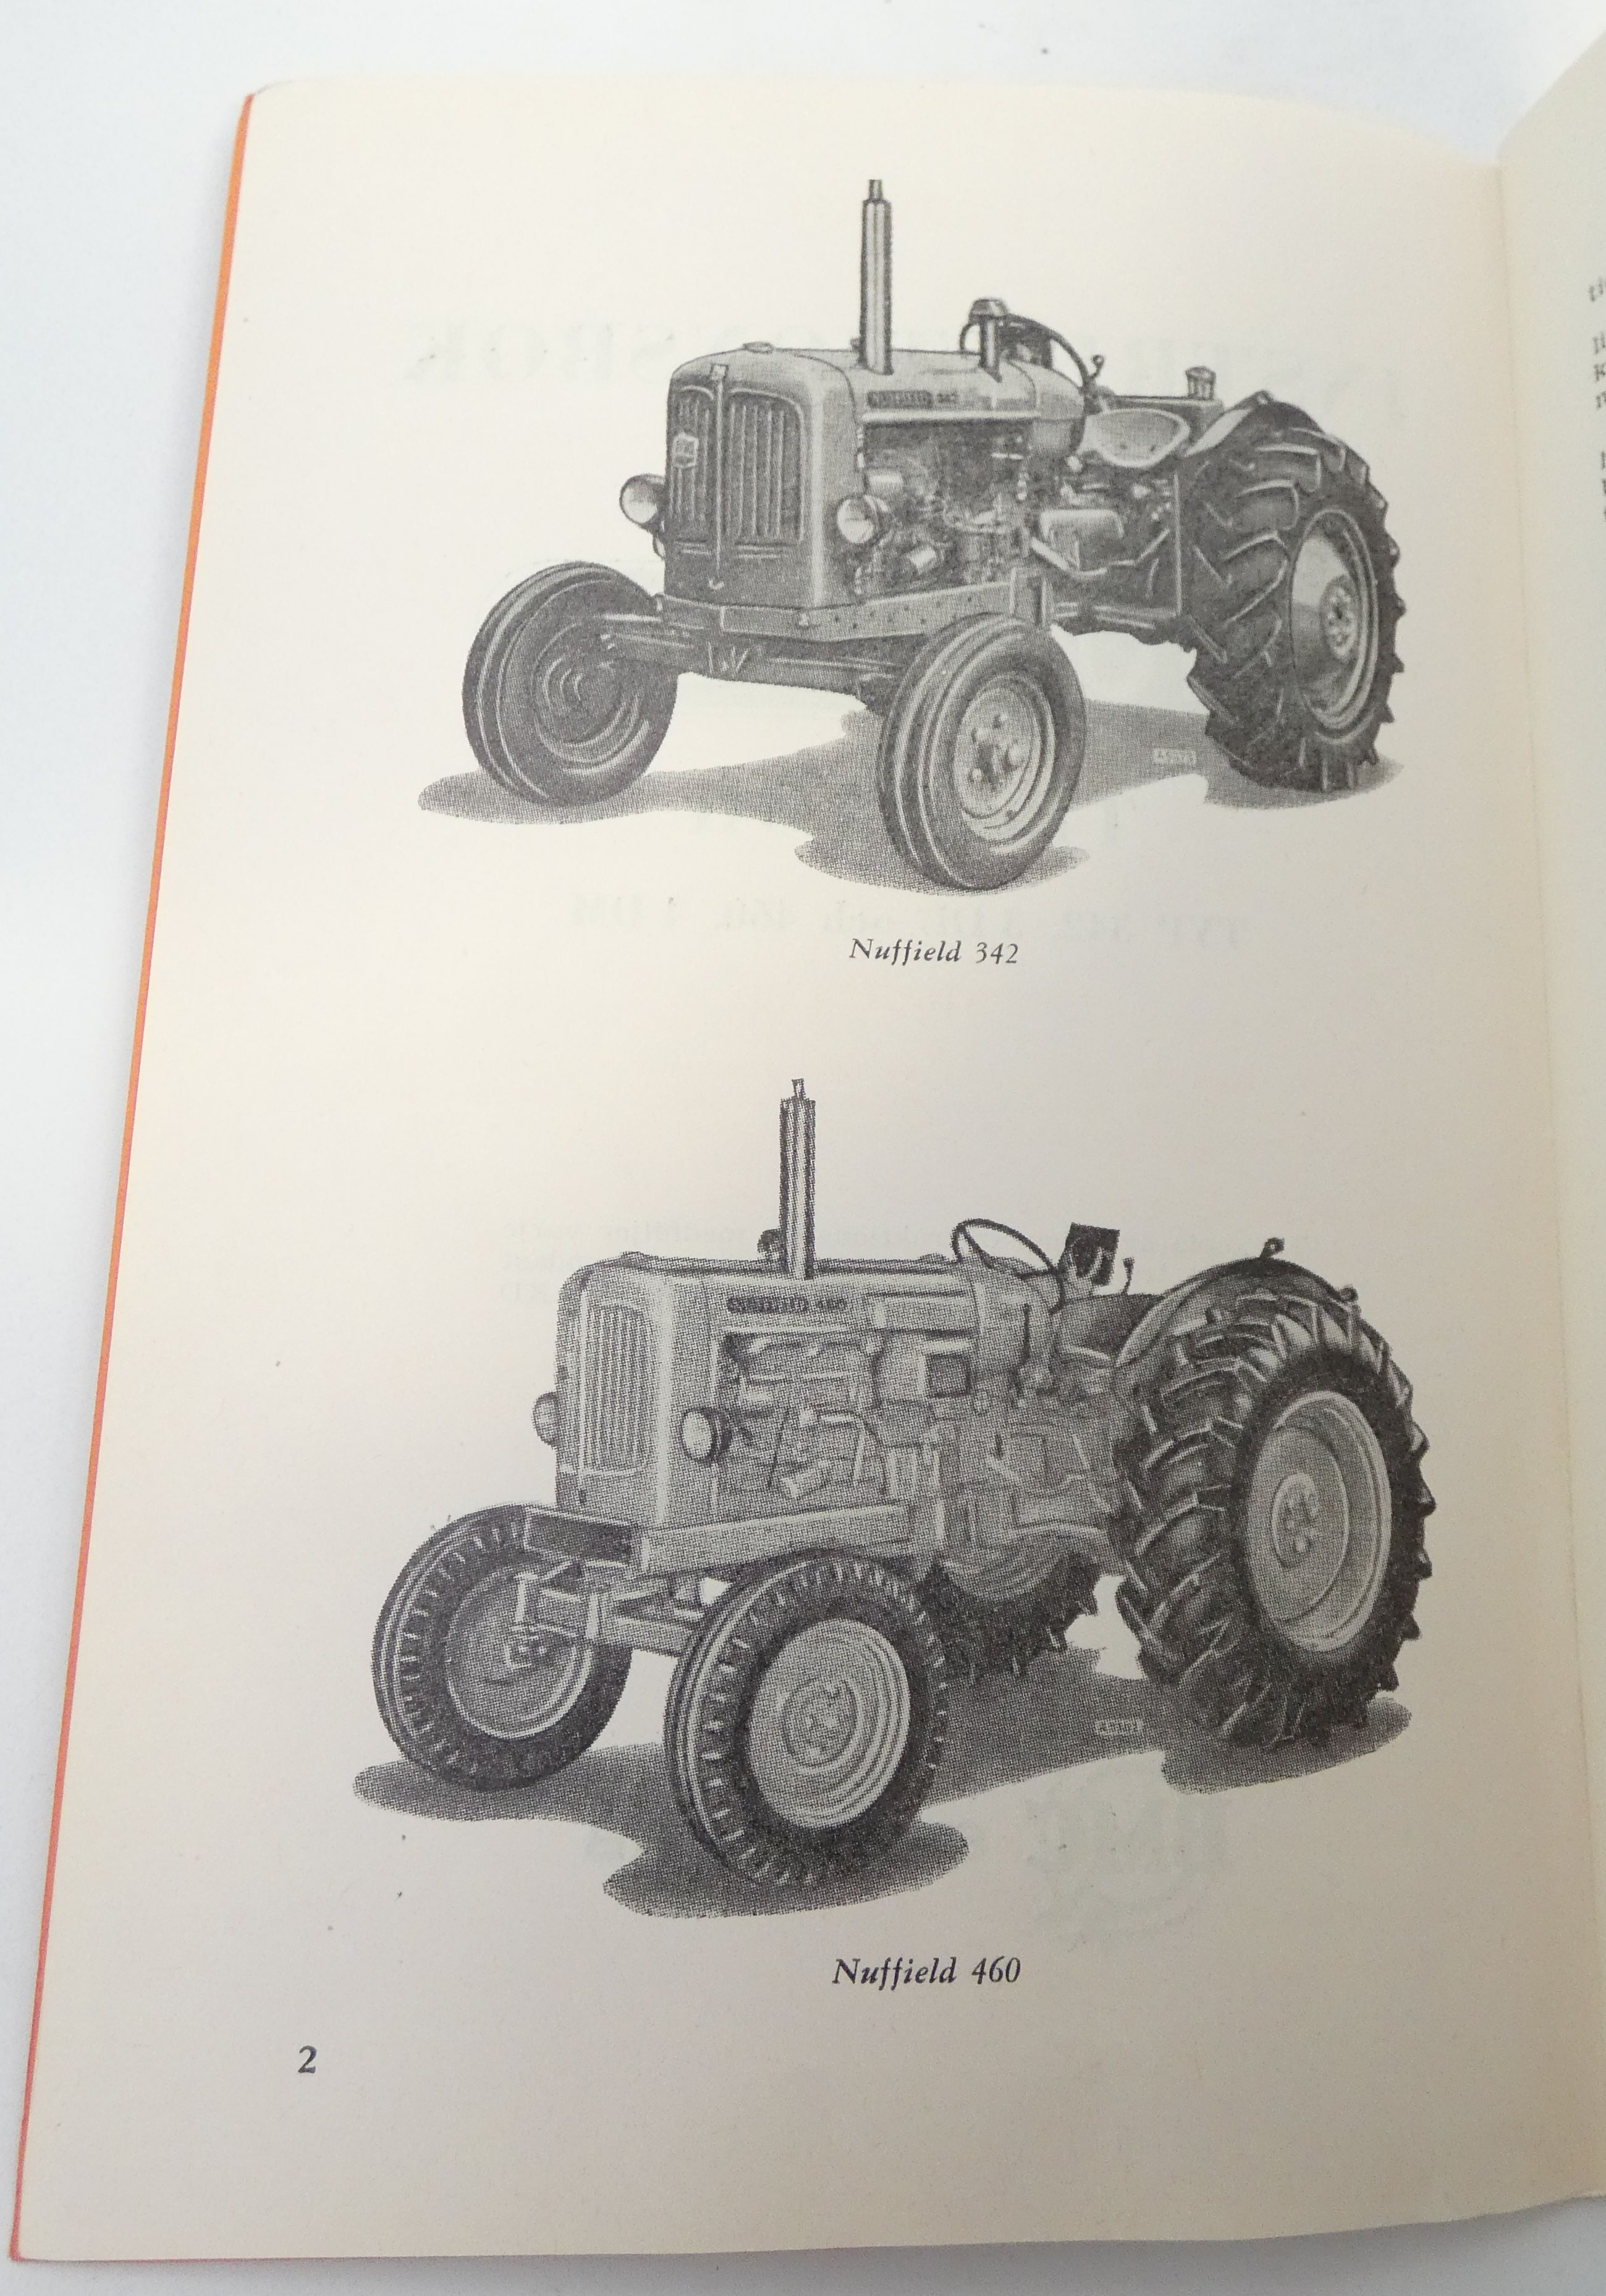 Nuffield traktor typ 342, 3DI och 460, 4DM instruktionsbok